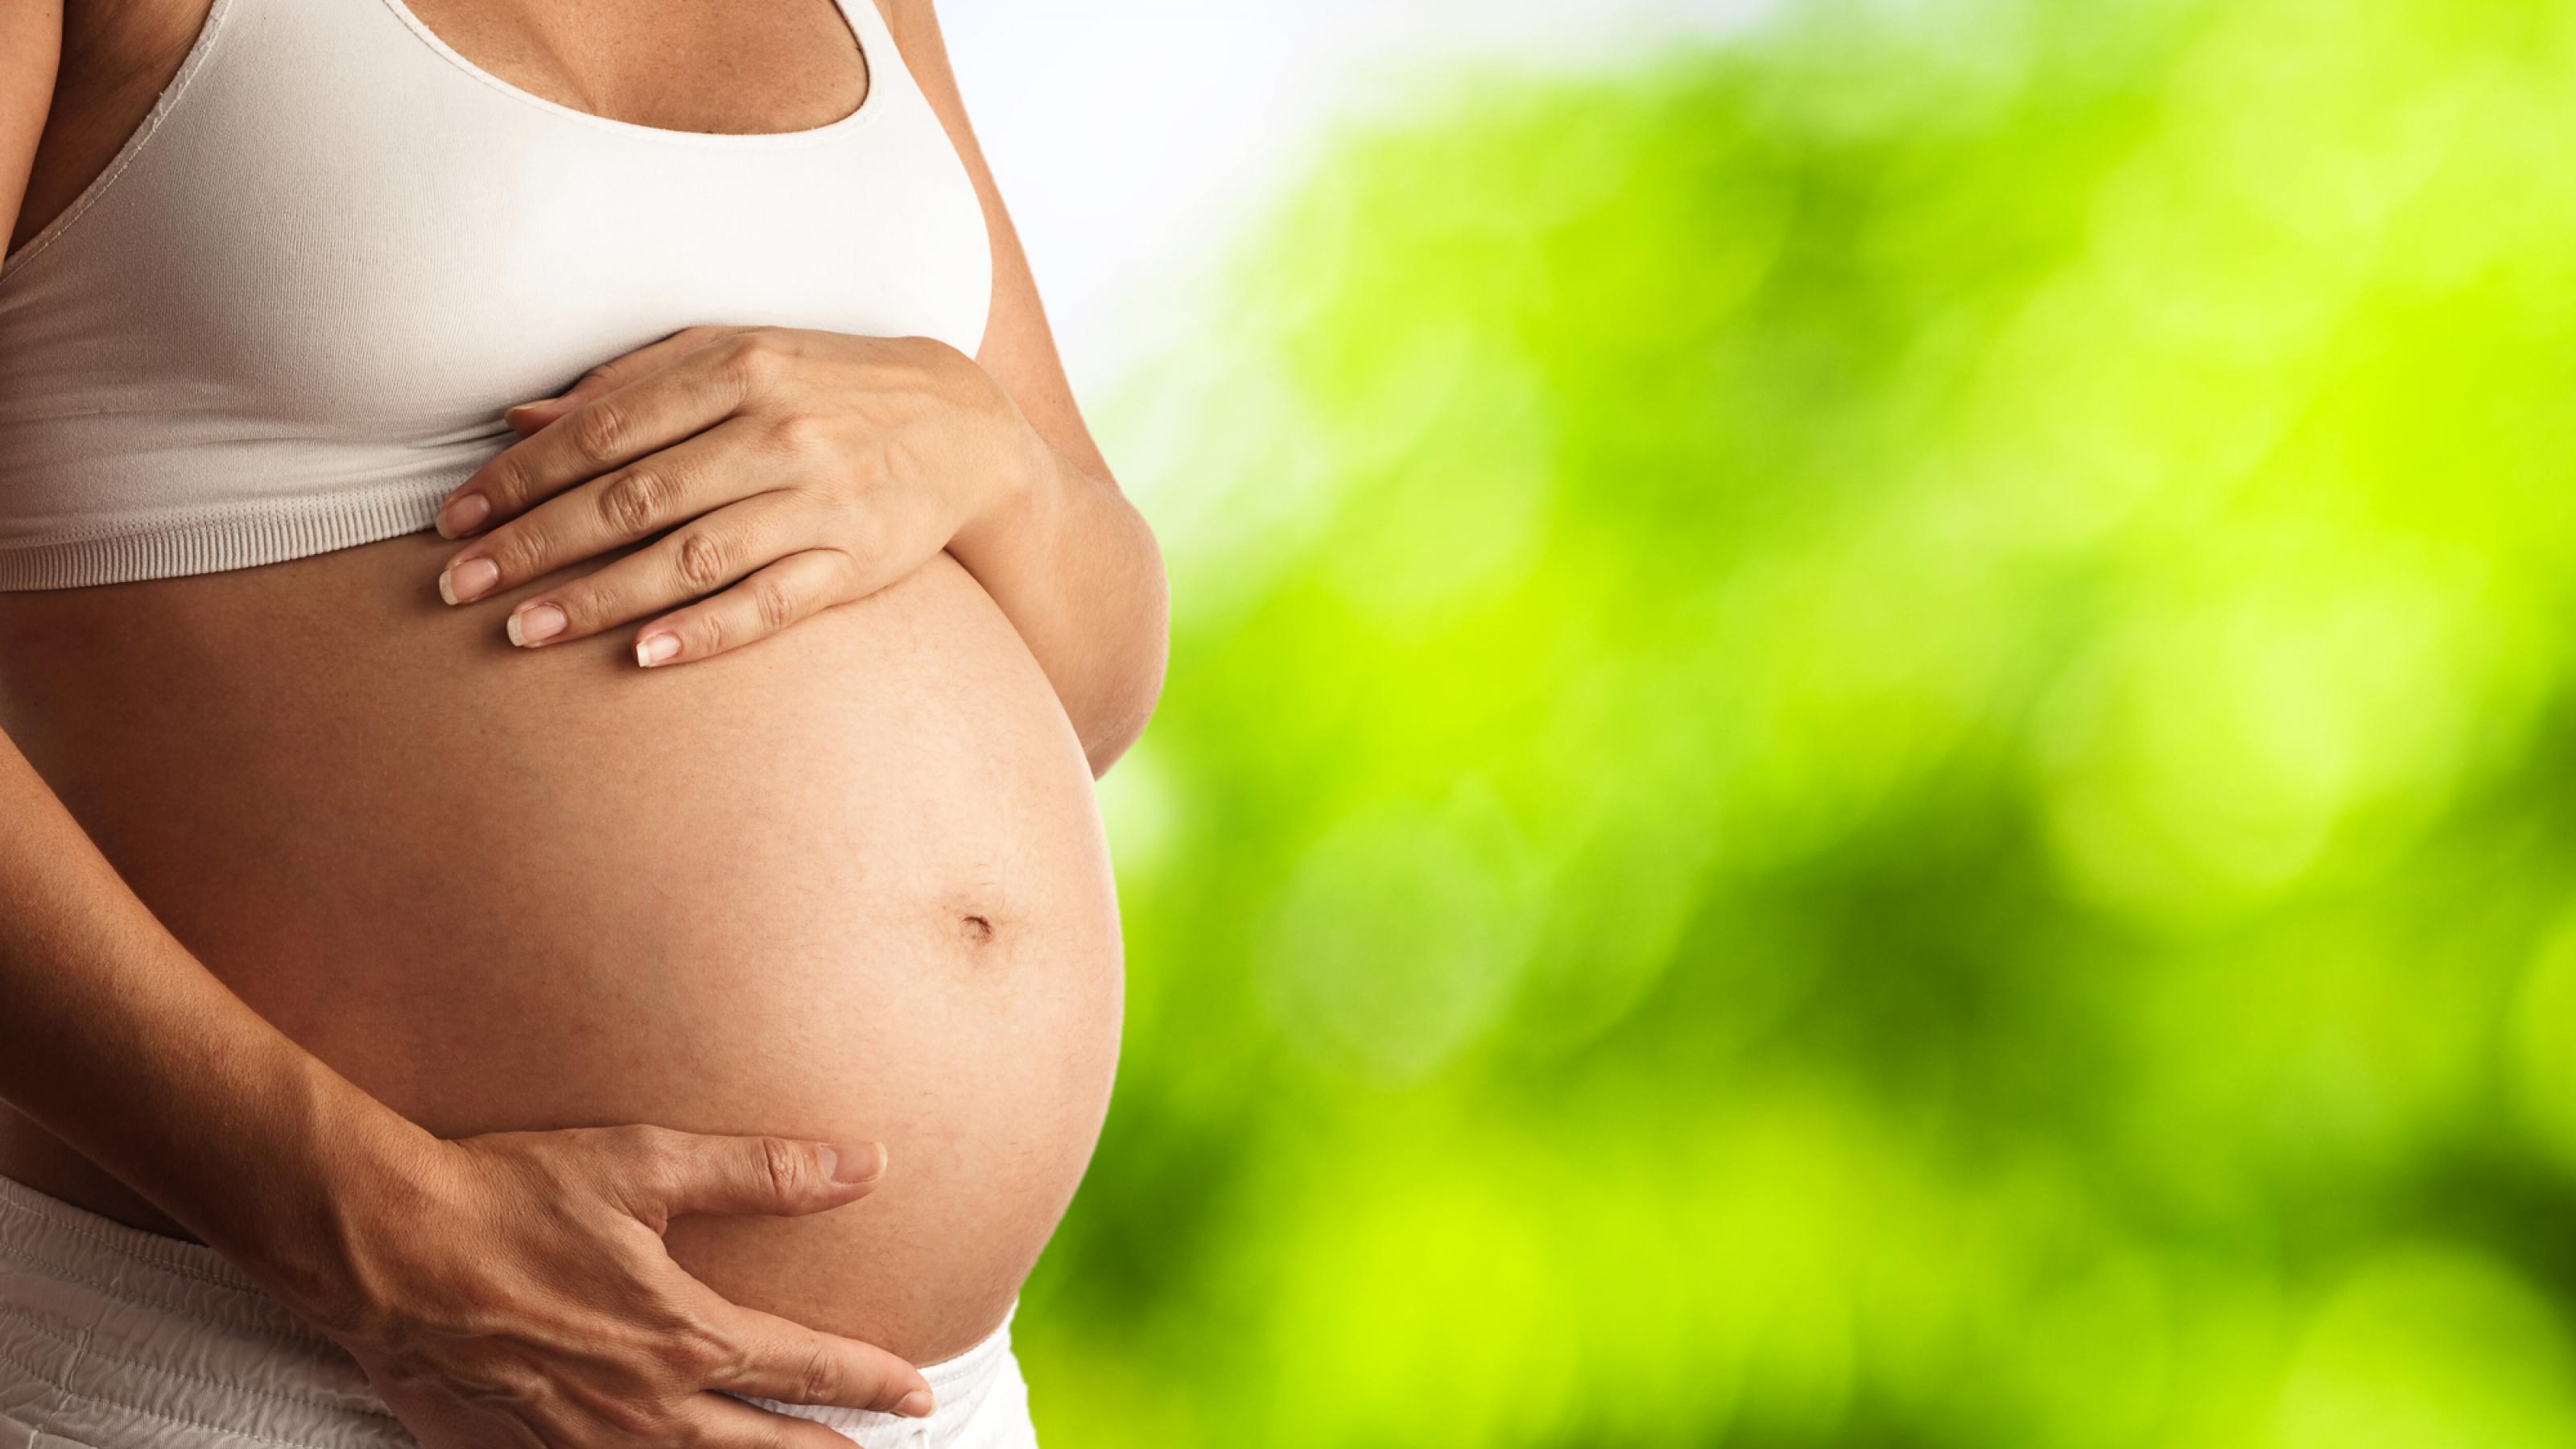 Schwangere hält ihre Hände an ihren Babybauch. Hitzewarnungen und Handlungsempfehlungen werden noch zu selten an Schwangere kommuniziert.